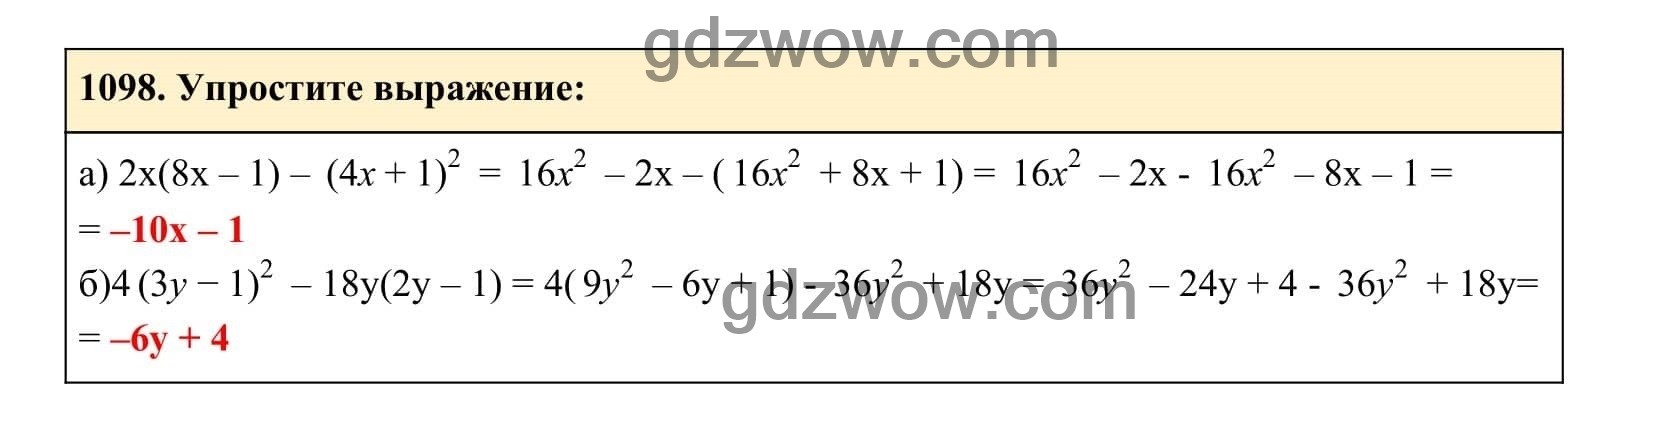 Упражнение 1098 - ГДЗ по Алгебре 7 класс Учебник Макарычев (решебник) - GDZwow